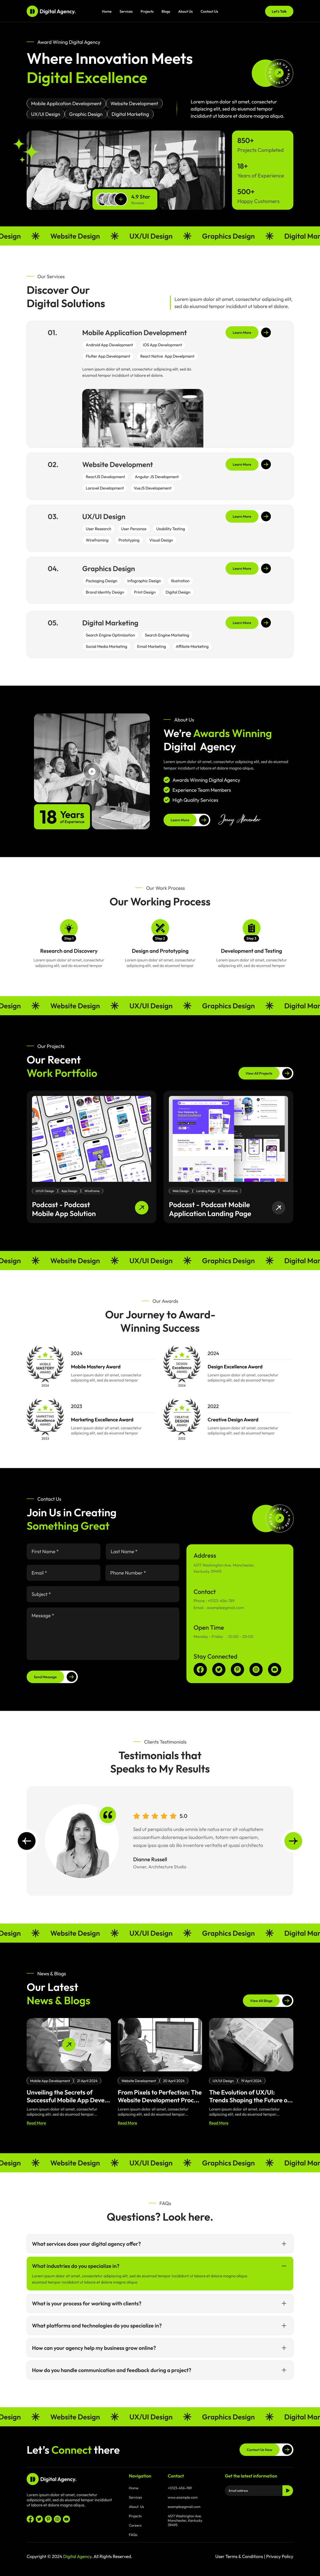 digital Agency website figma Home Page Design ui ux design